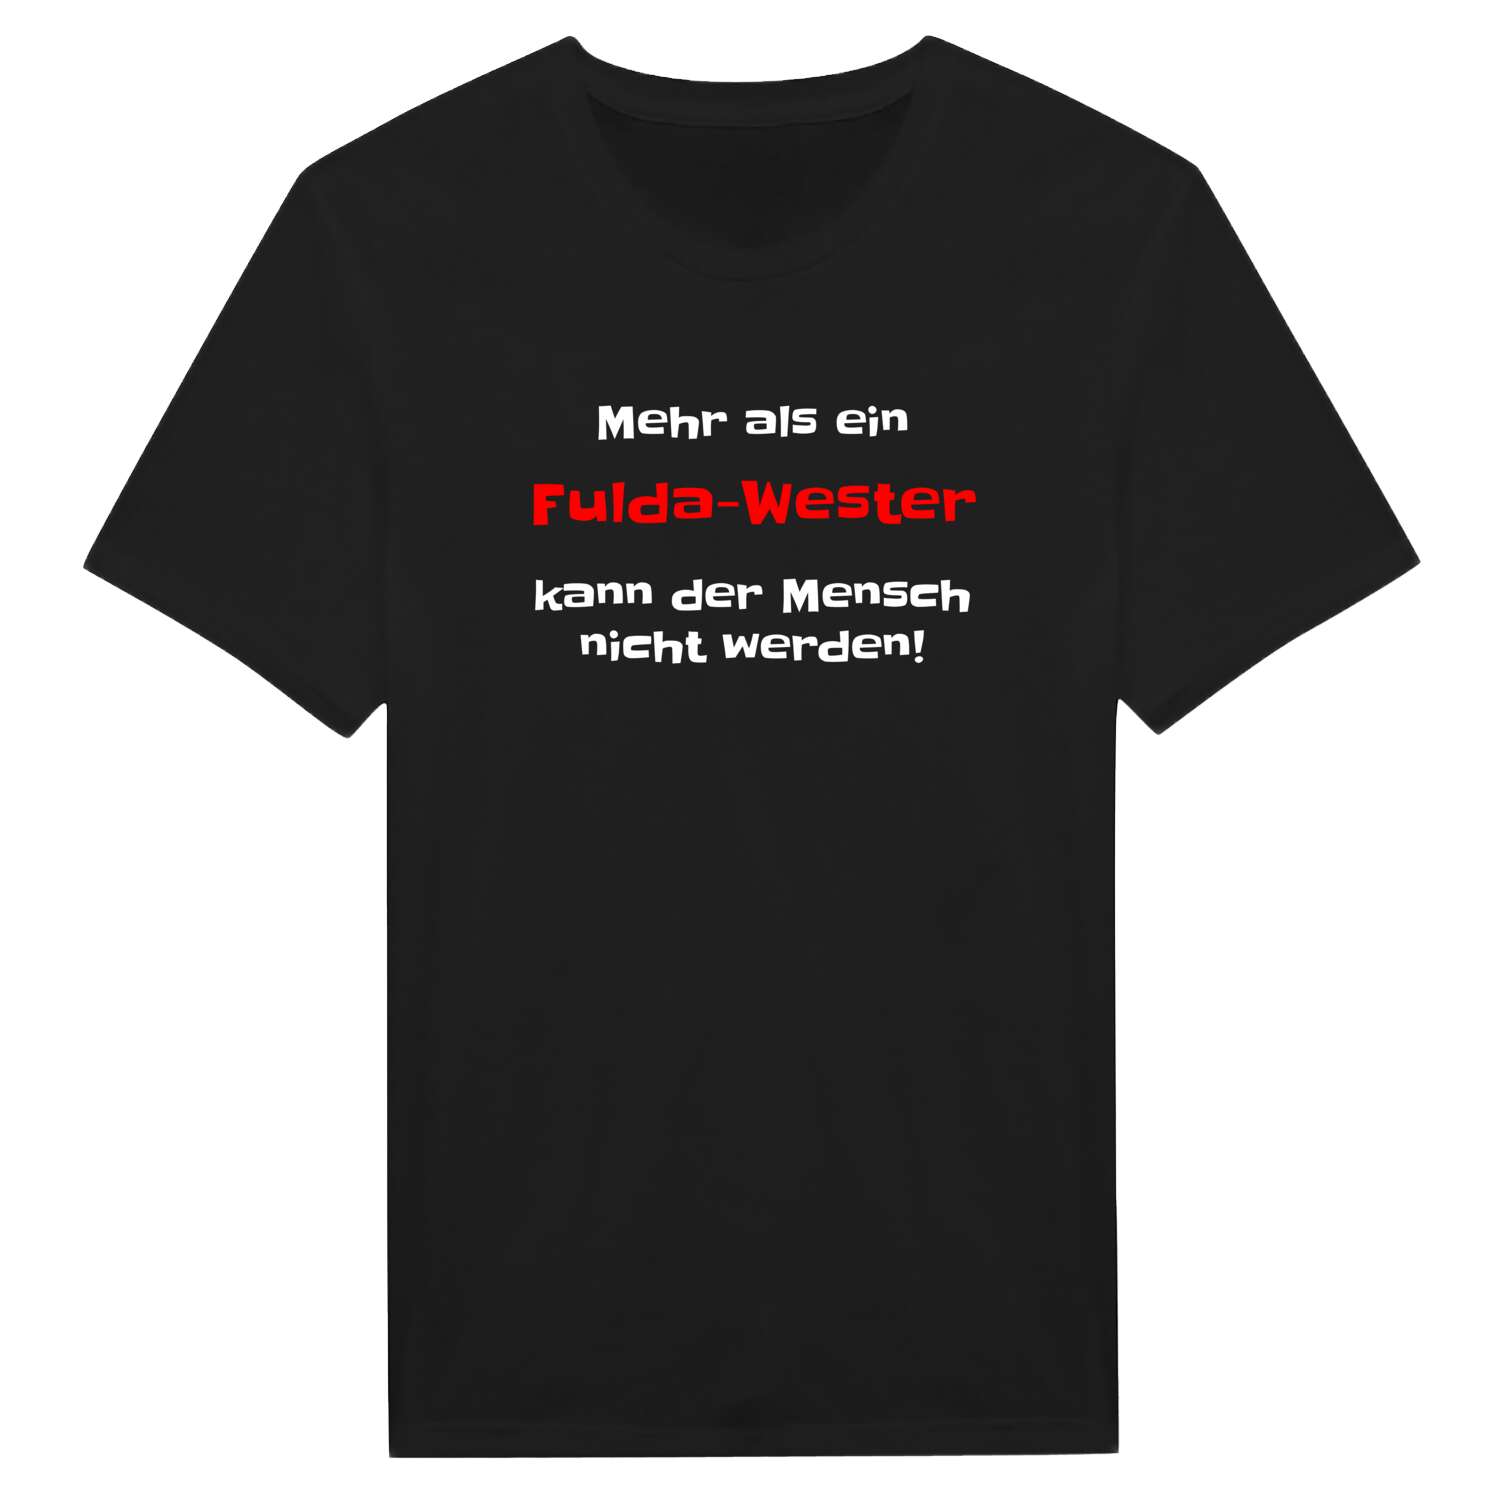 Fulda-West T-Shirt »Mehr als ein«